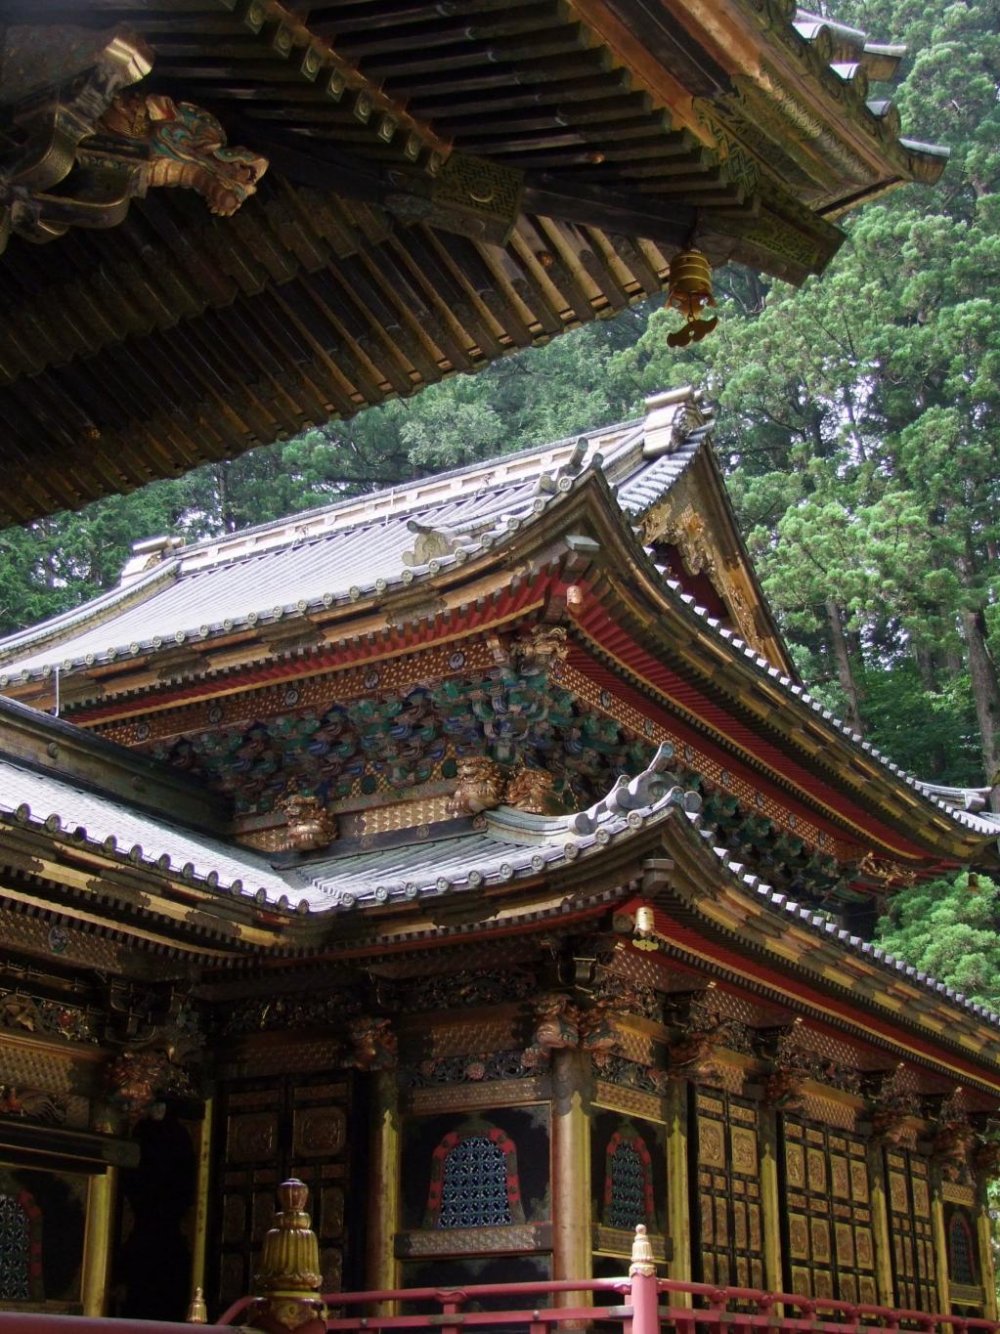 日光 大猷院霊廟 たいりゅういんれいびょう 栃木 Japan Travel